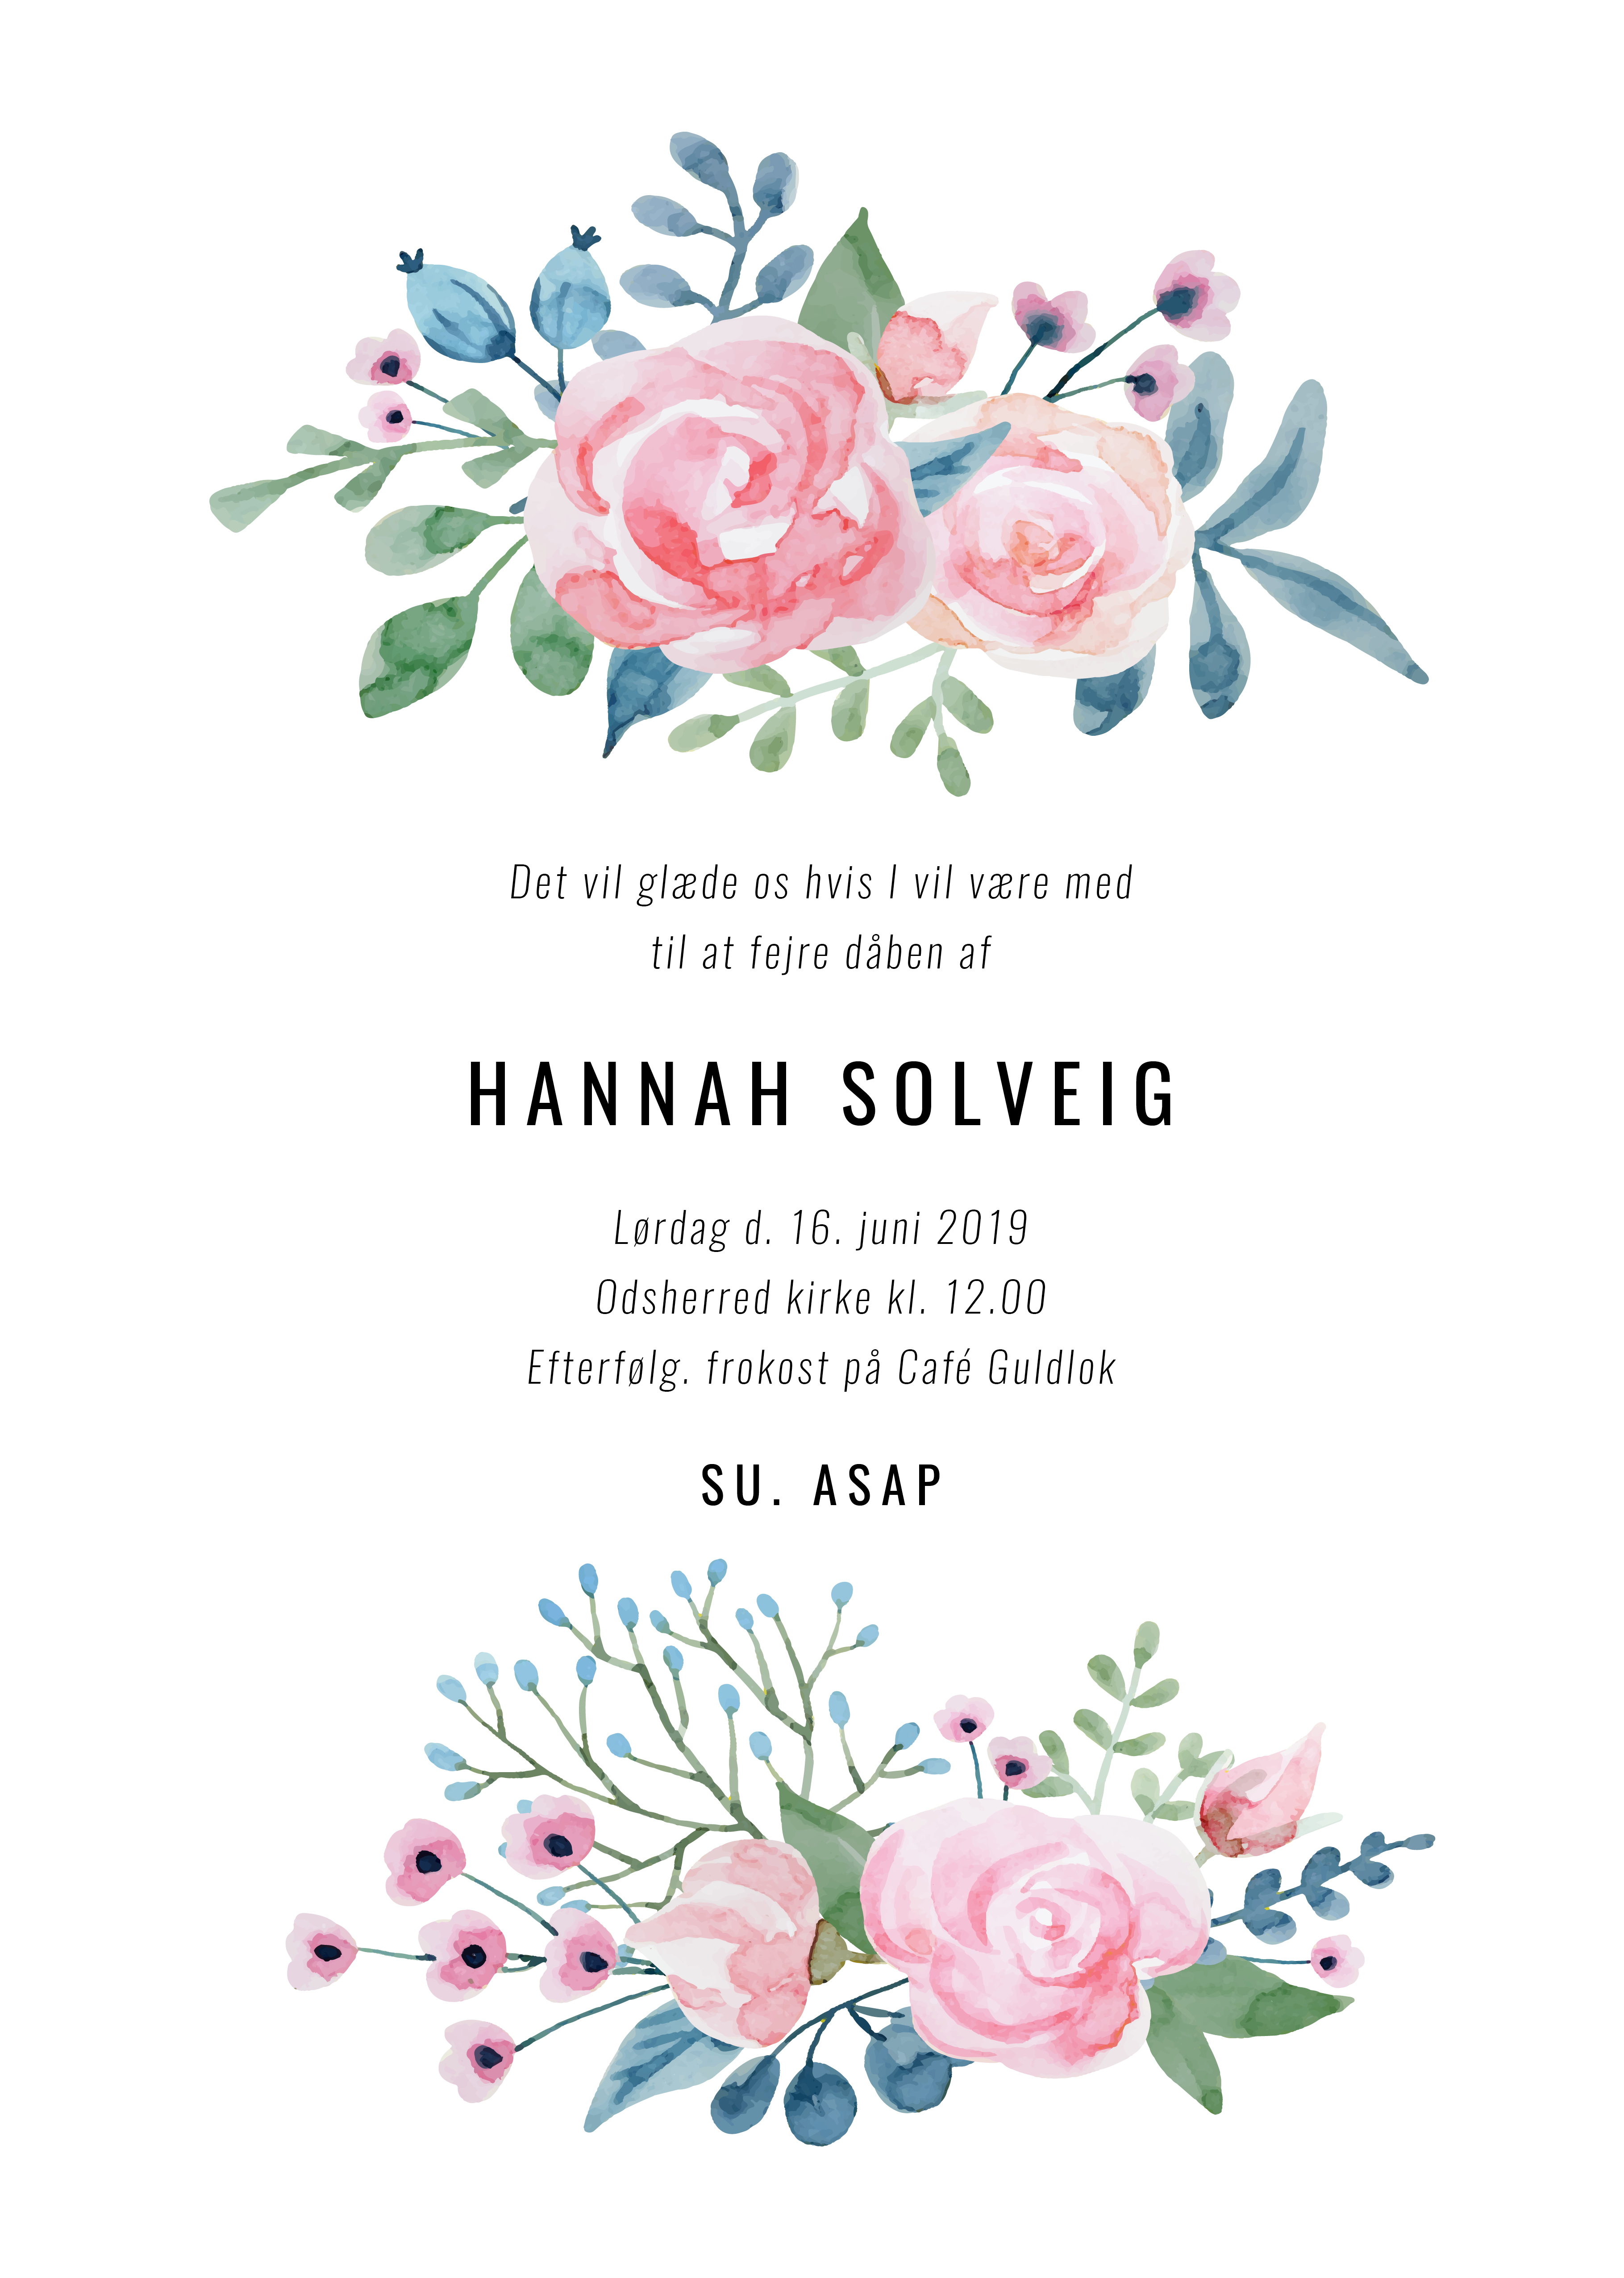 Dåbsinvitationer - Hannah Solveig